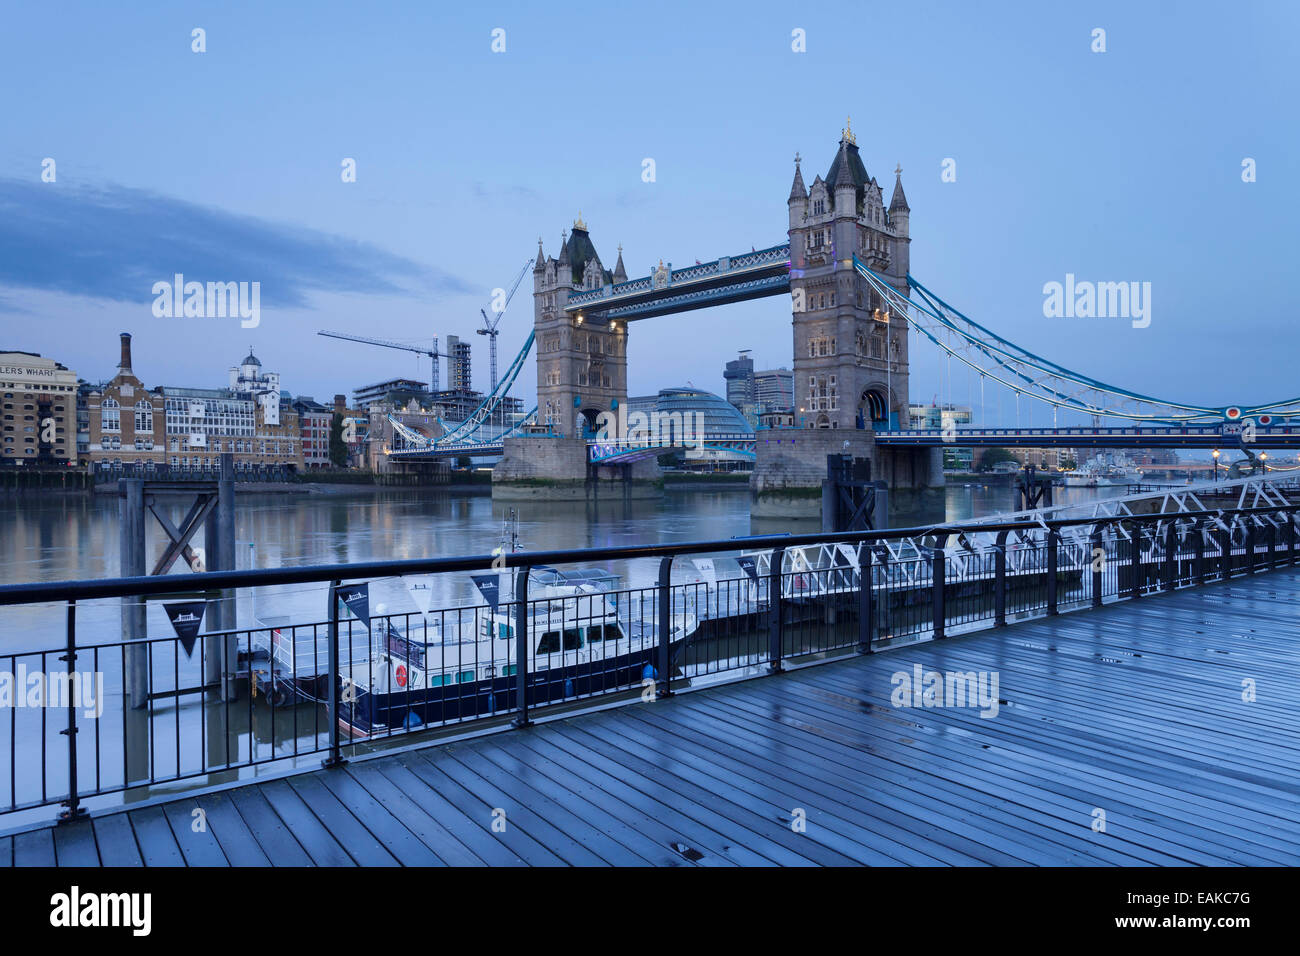 Vue sur le Tower Bridge à City Hall, Londres, Angleterre, Royaume-Uni Banque D'Images